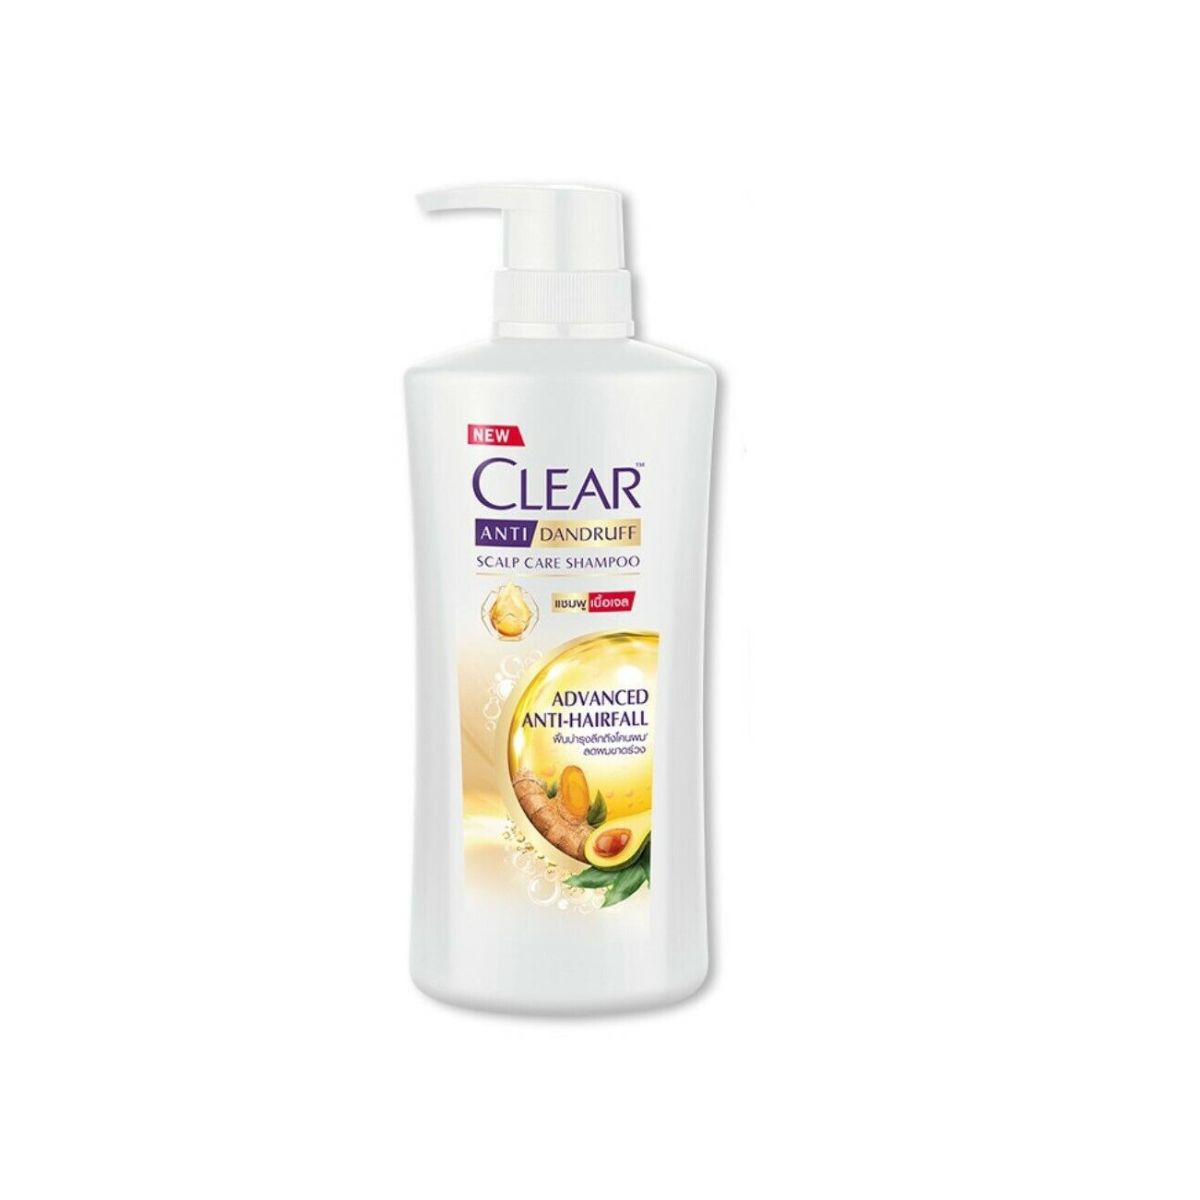 Clear Anti Dandruff Scalp Care Shampoo - Advanced Anti-Hair Fall - 435ml